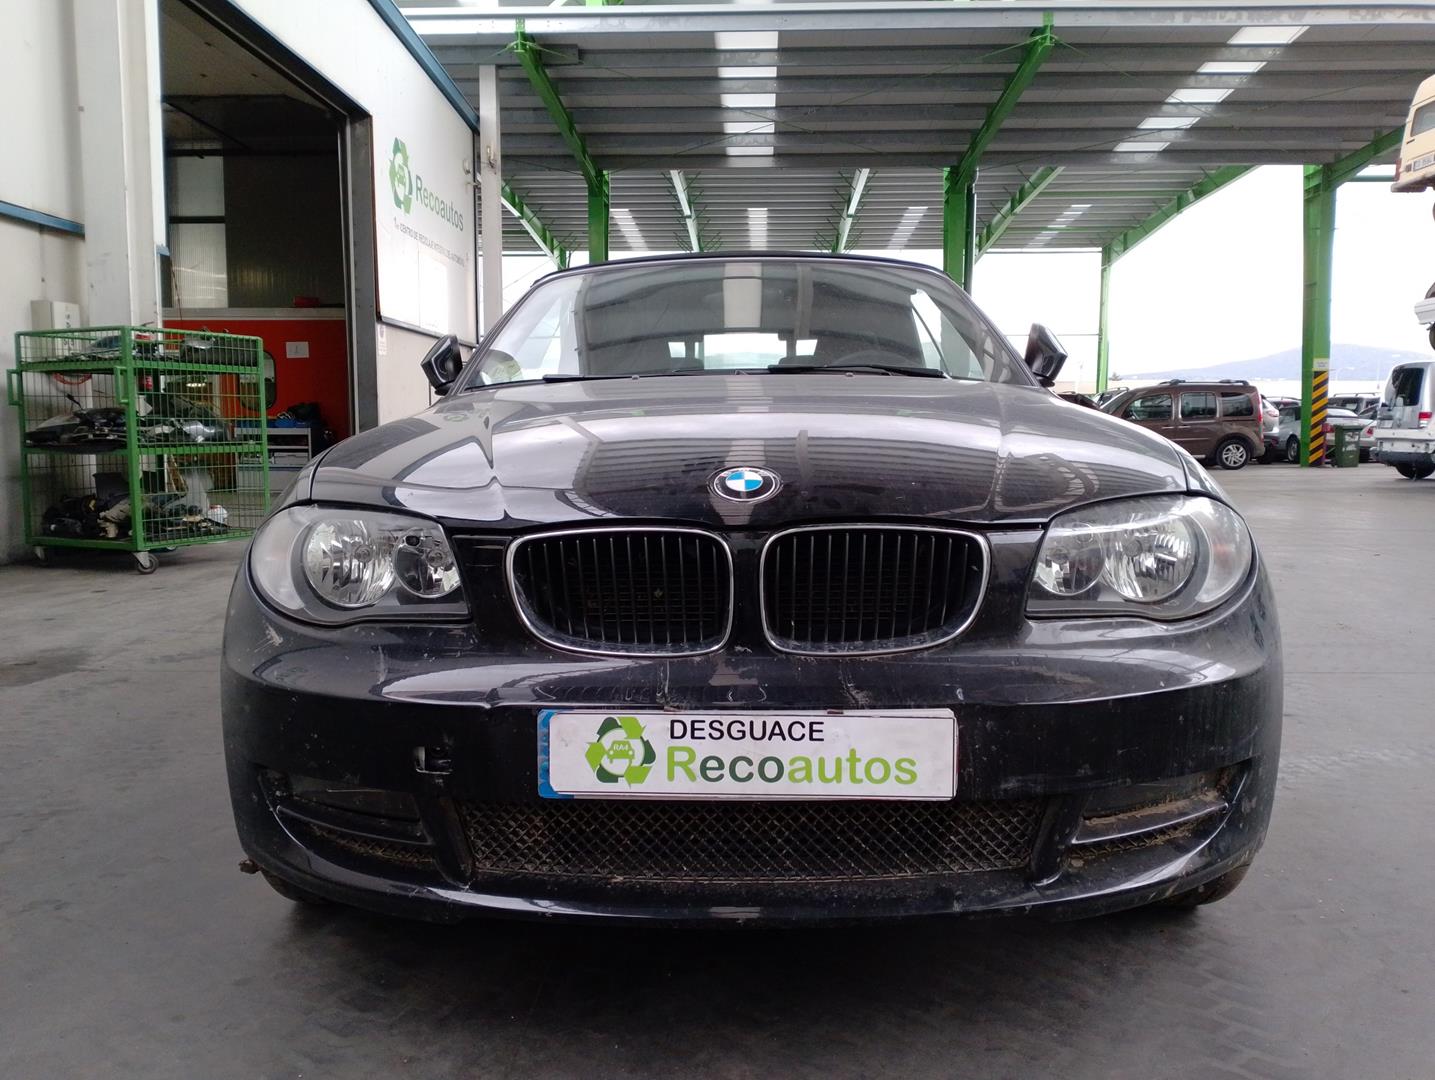 BMW 1 Series E81/E82/E87/E88 (2004-2013) Ratlankis (ratas) WH29-85018, R188.5JX18H2ET42, ALUMINIO10P 24208217